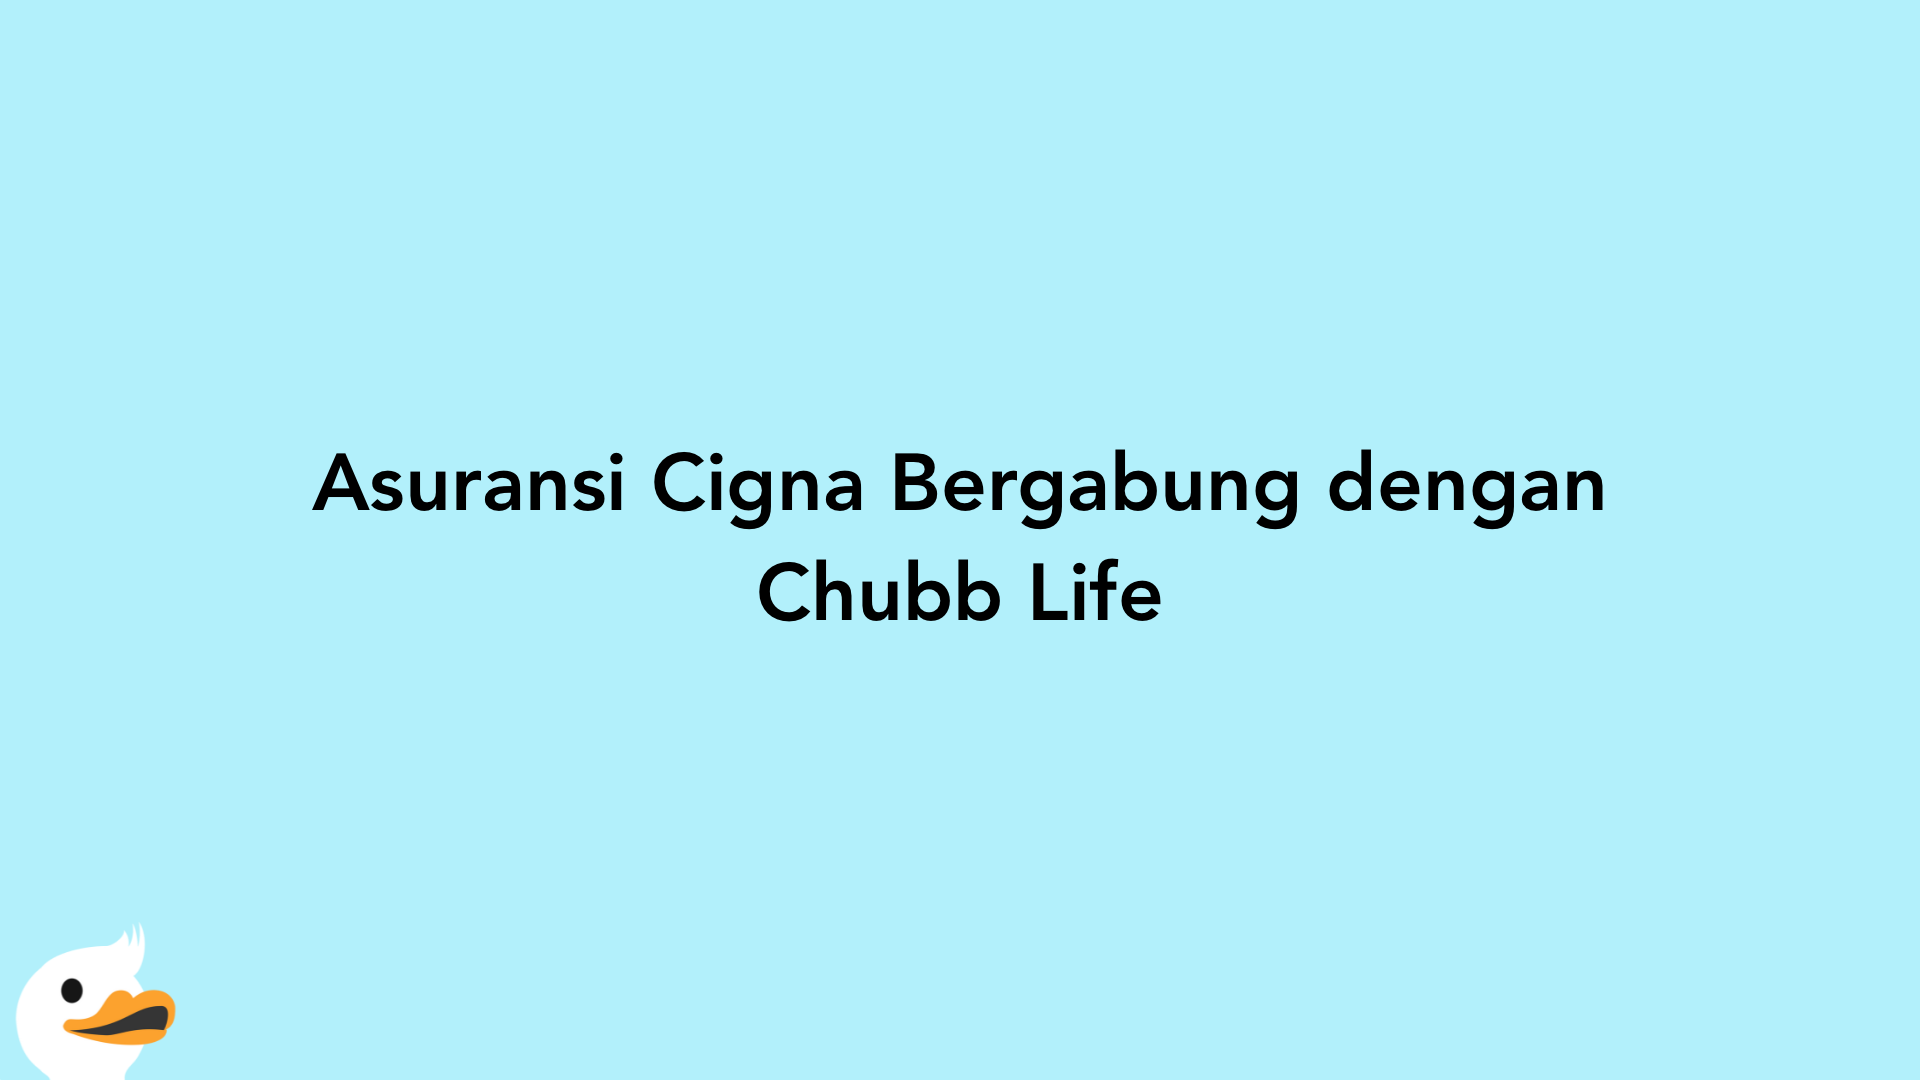 Asuransi Cigna Bergabung dengan Chubb Life